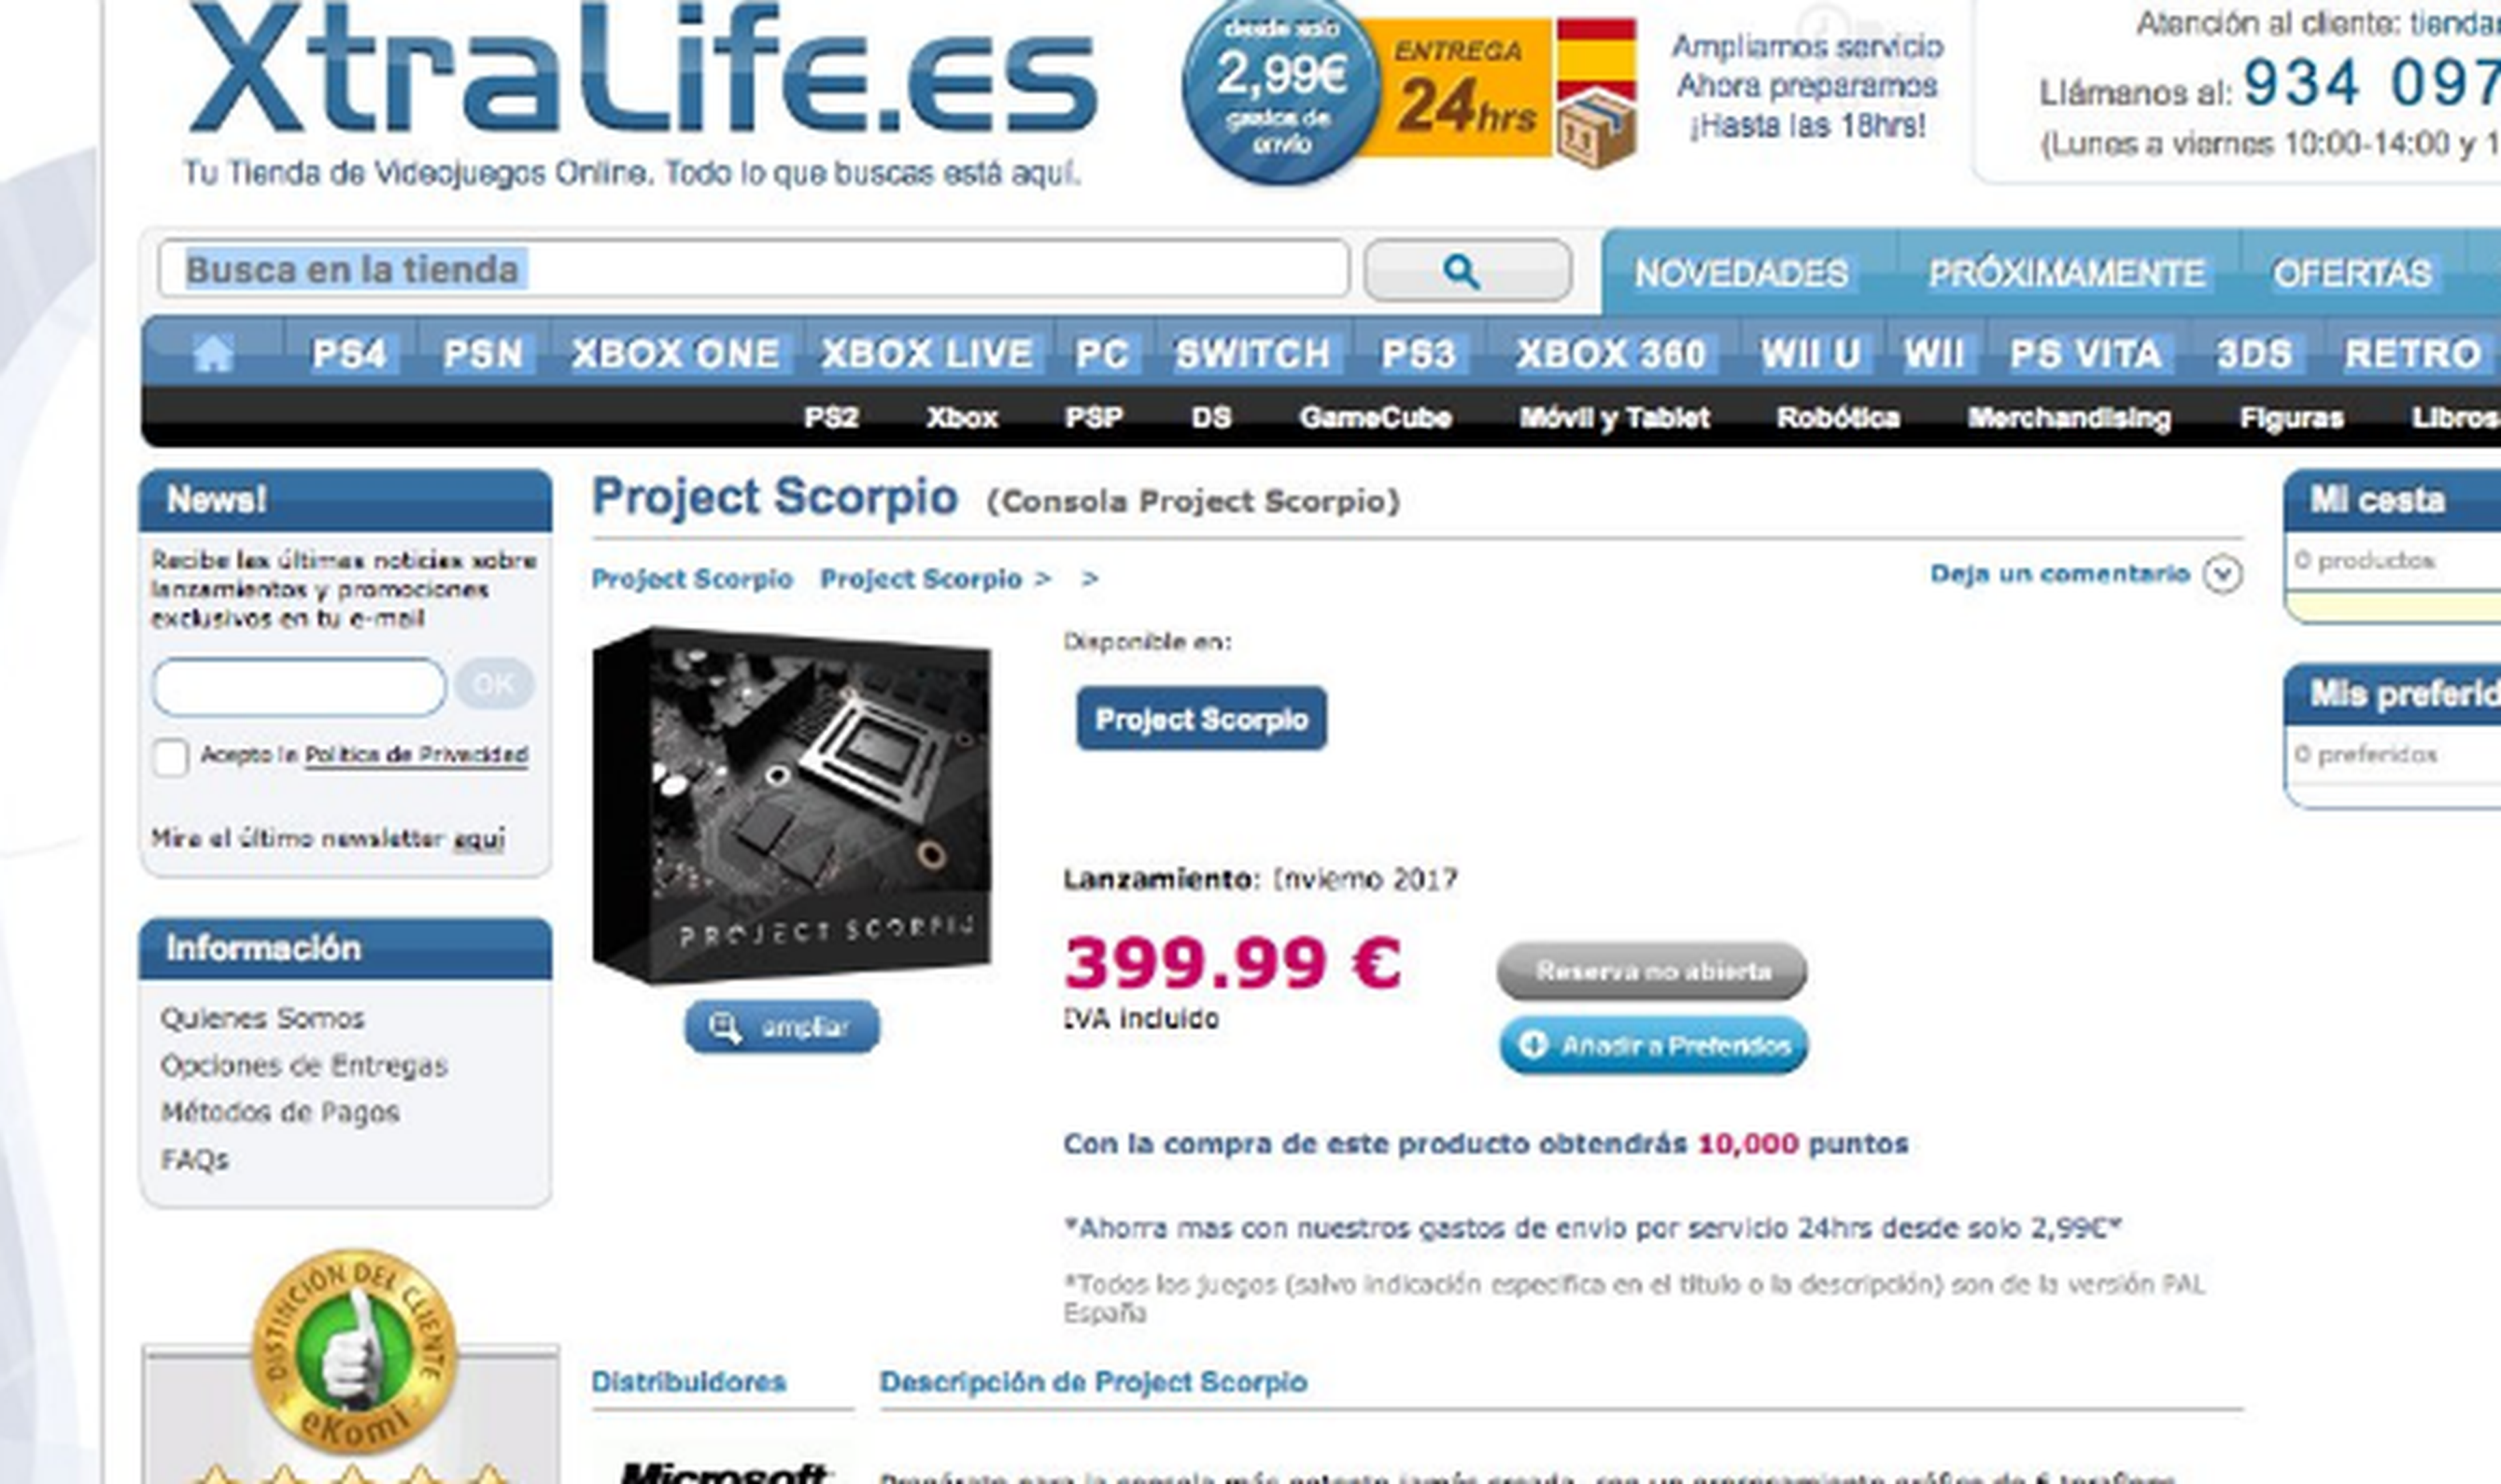 El precio de Project Scorpio, filtrado por una tienda española